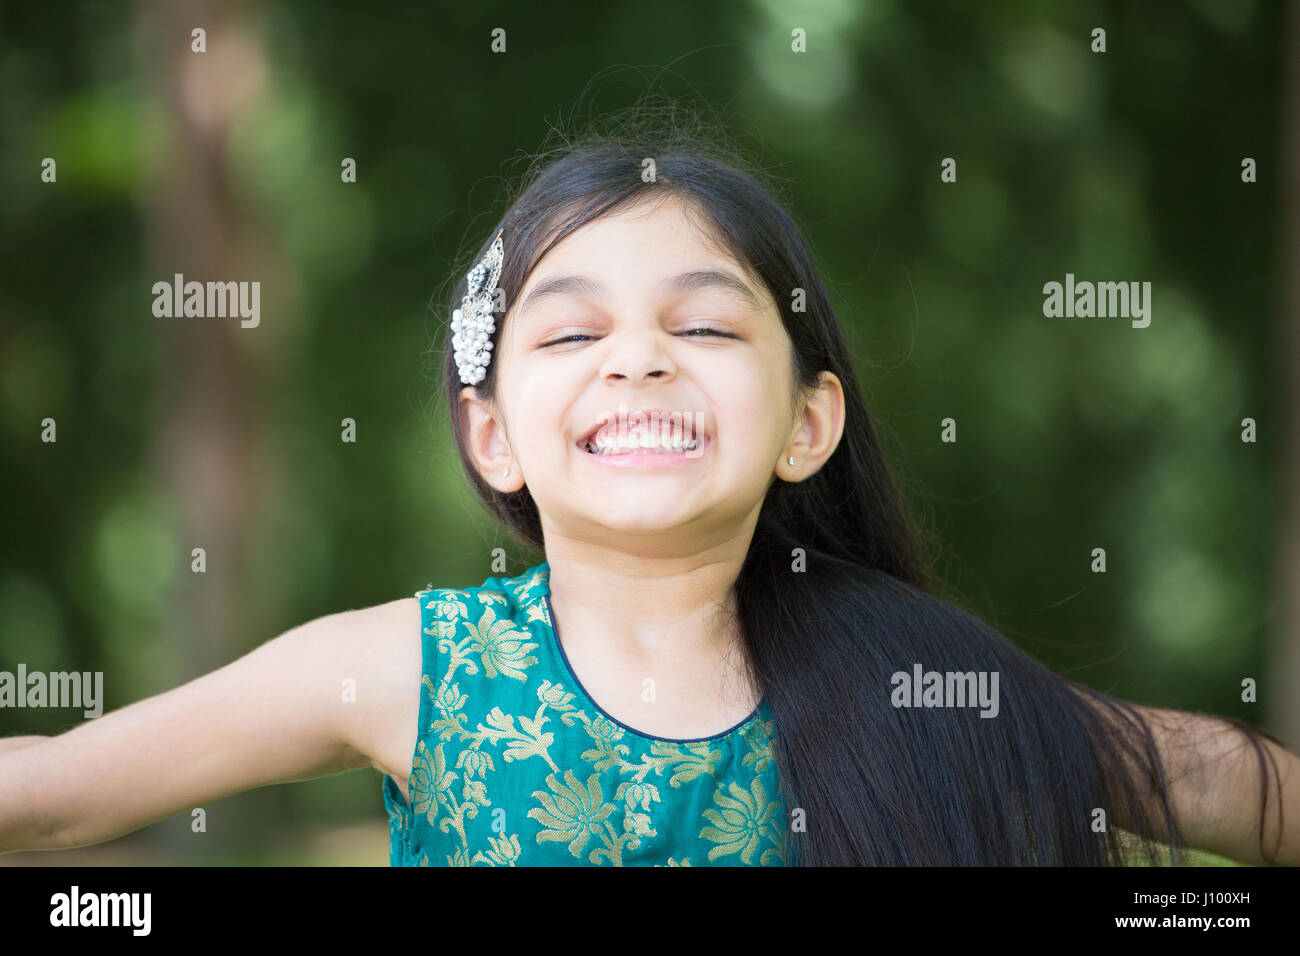 Closeup portrait, jeune fille aimant s'amuser faire expression joyeuse heureux d'être en vie, isolé à l'extérieur l'extérieur contexte Banque D'Images